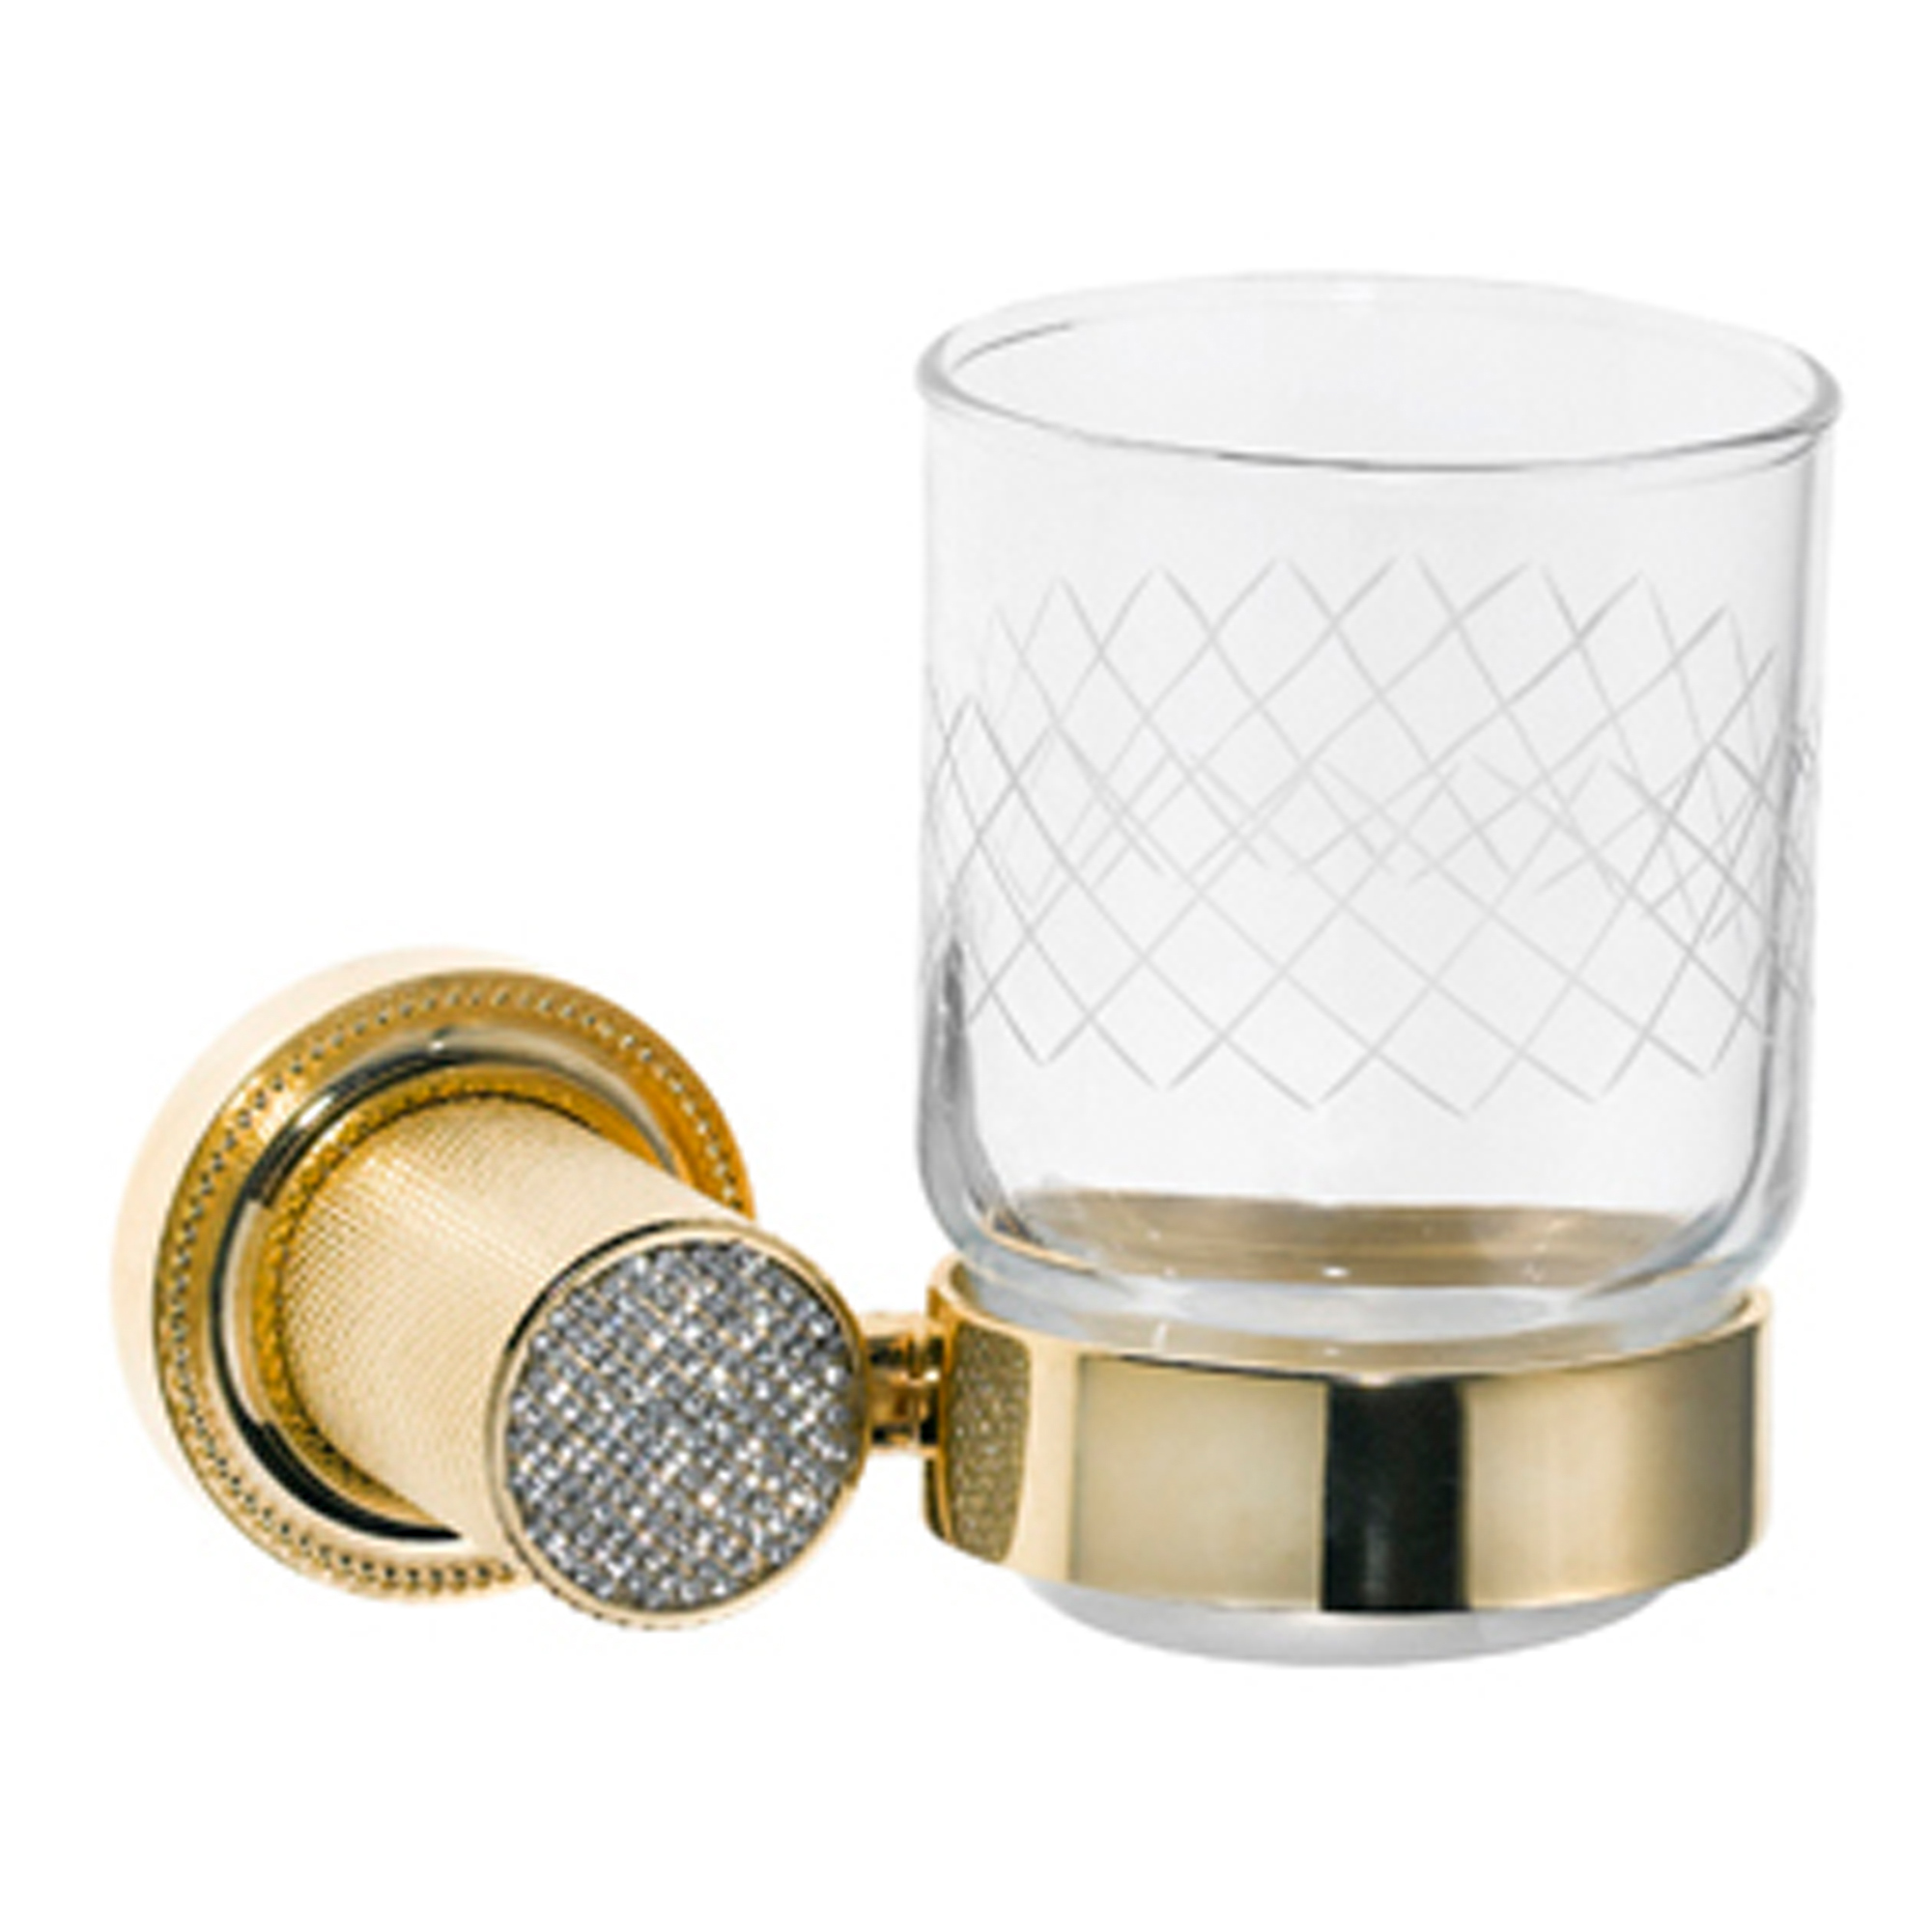 Стакан Boheme RoyalCristal 10924-G золото стакан для ванной milacio ultra квадратный золото mcu 951 gd